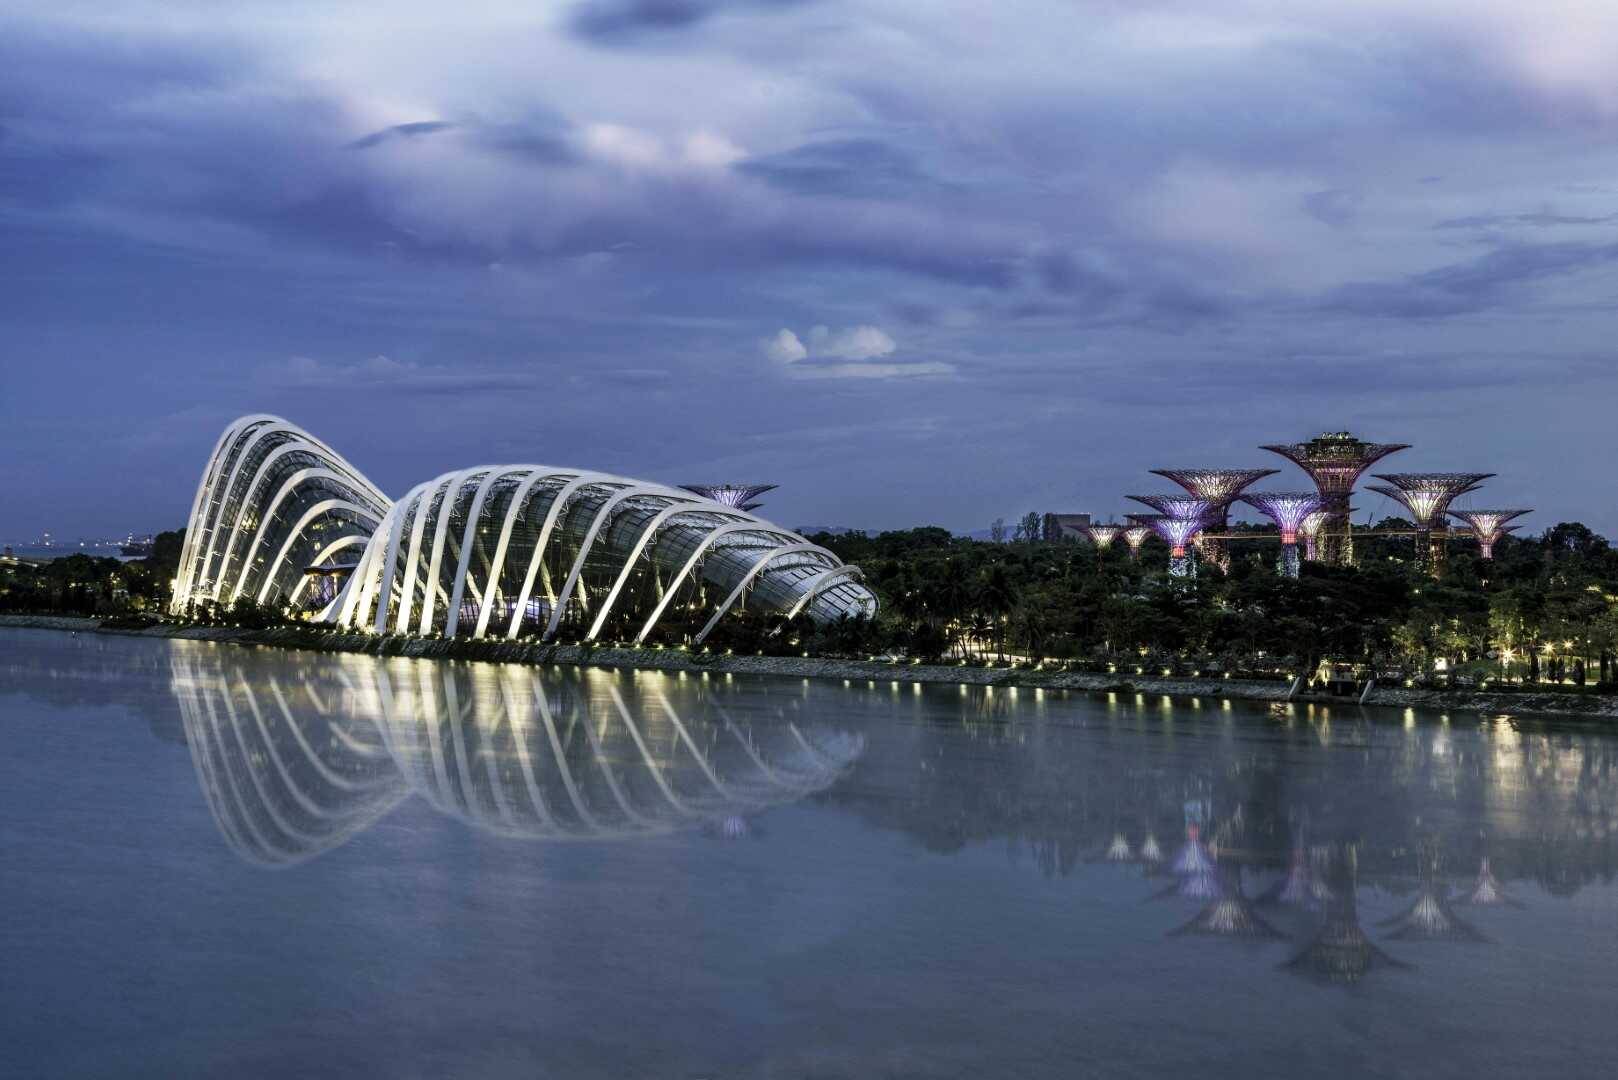 Du lịch Malaysia - Singapore mùa Thu từ Sài Gòn giá tốt